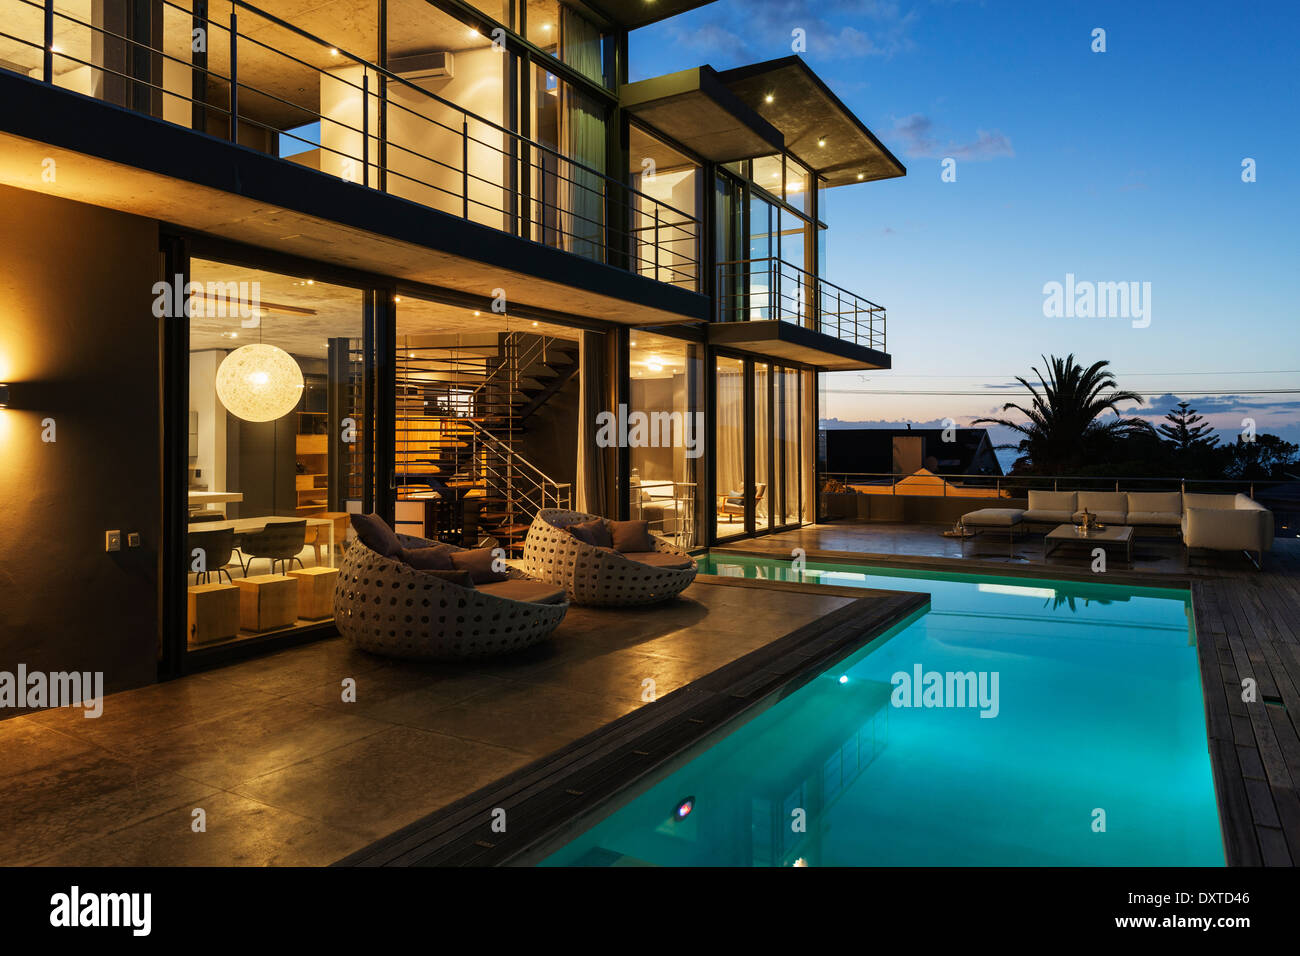 Maison de luxe avec piscine éclairée la nuit Banque D'Images